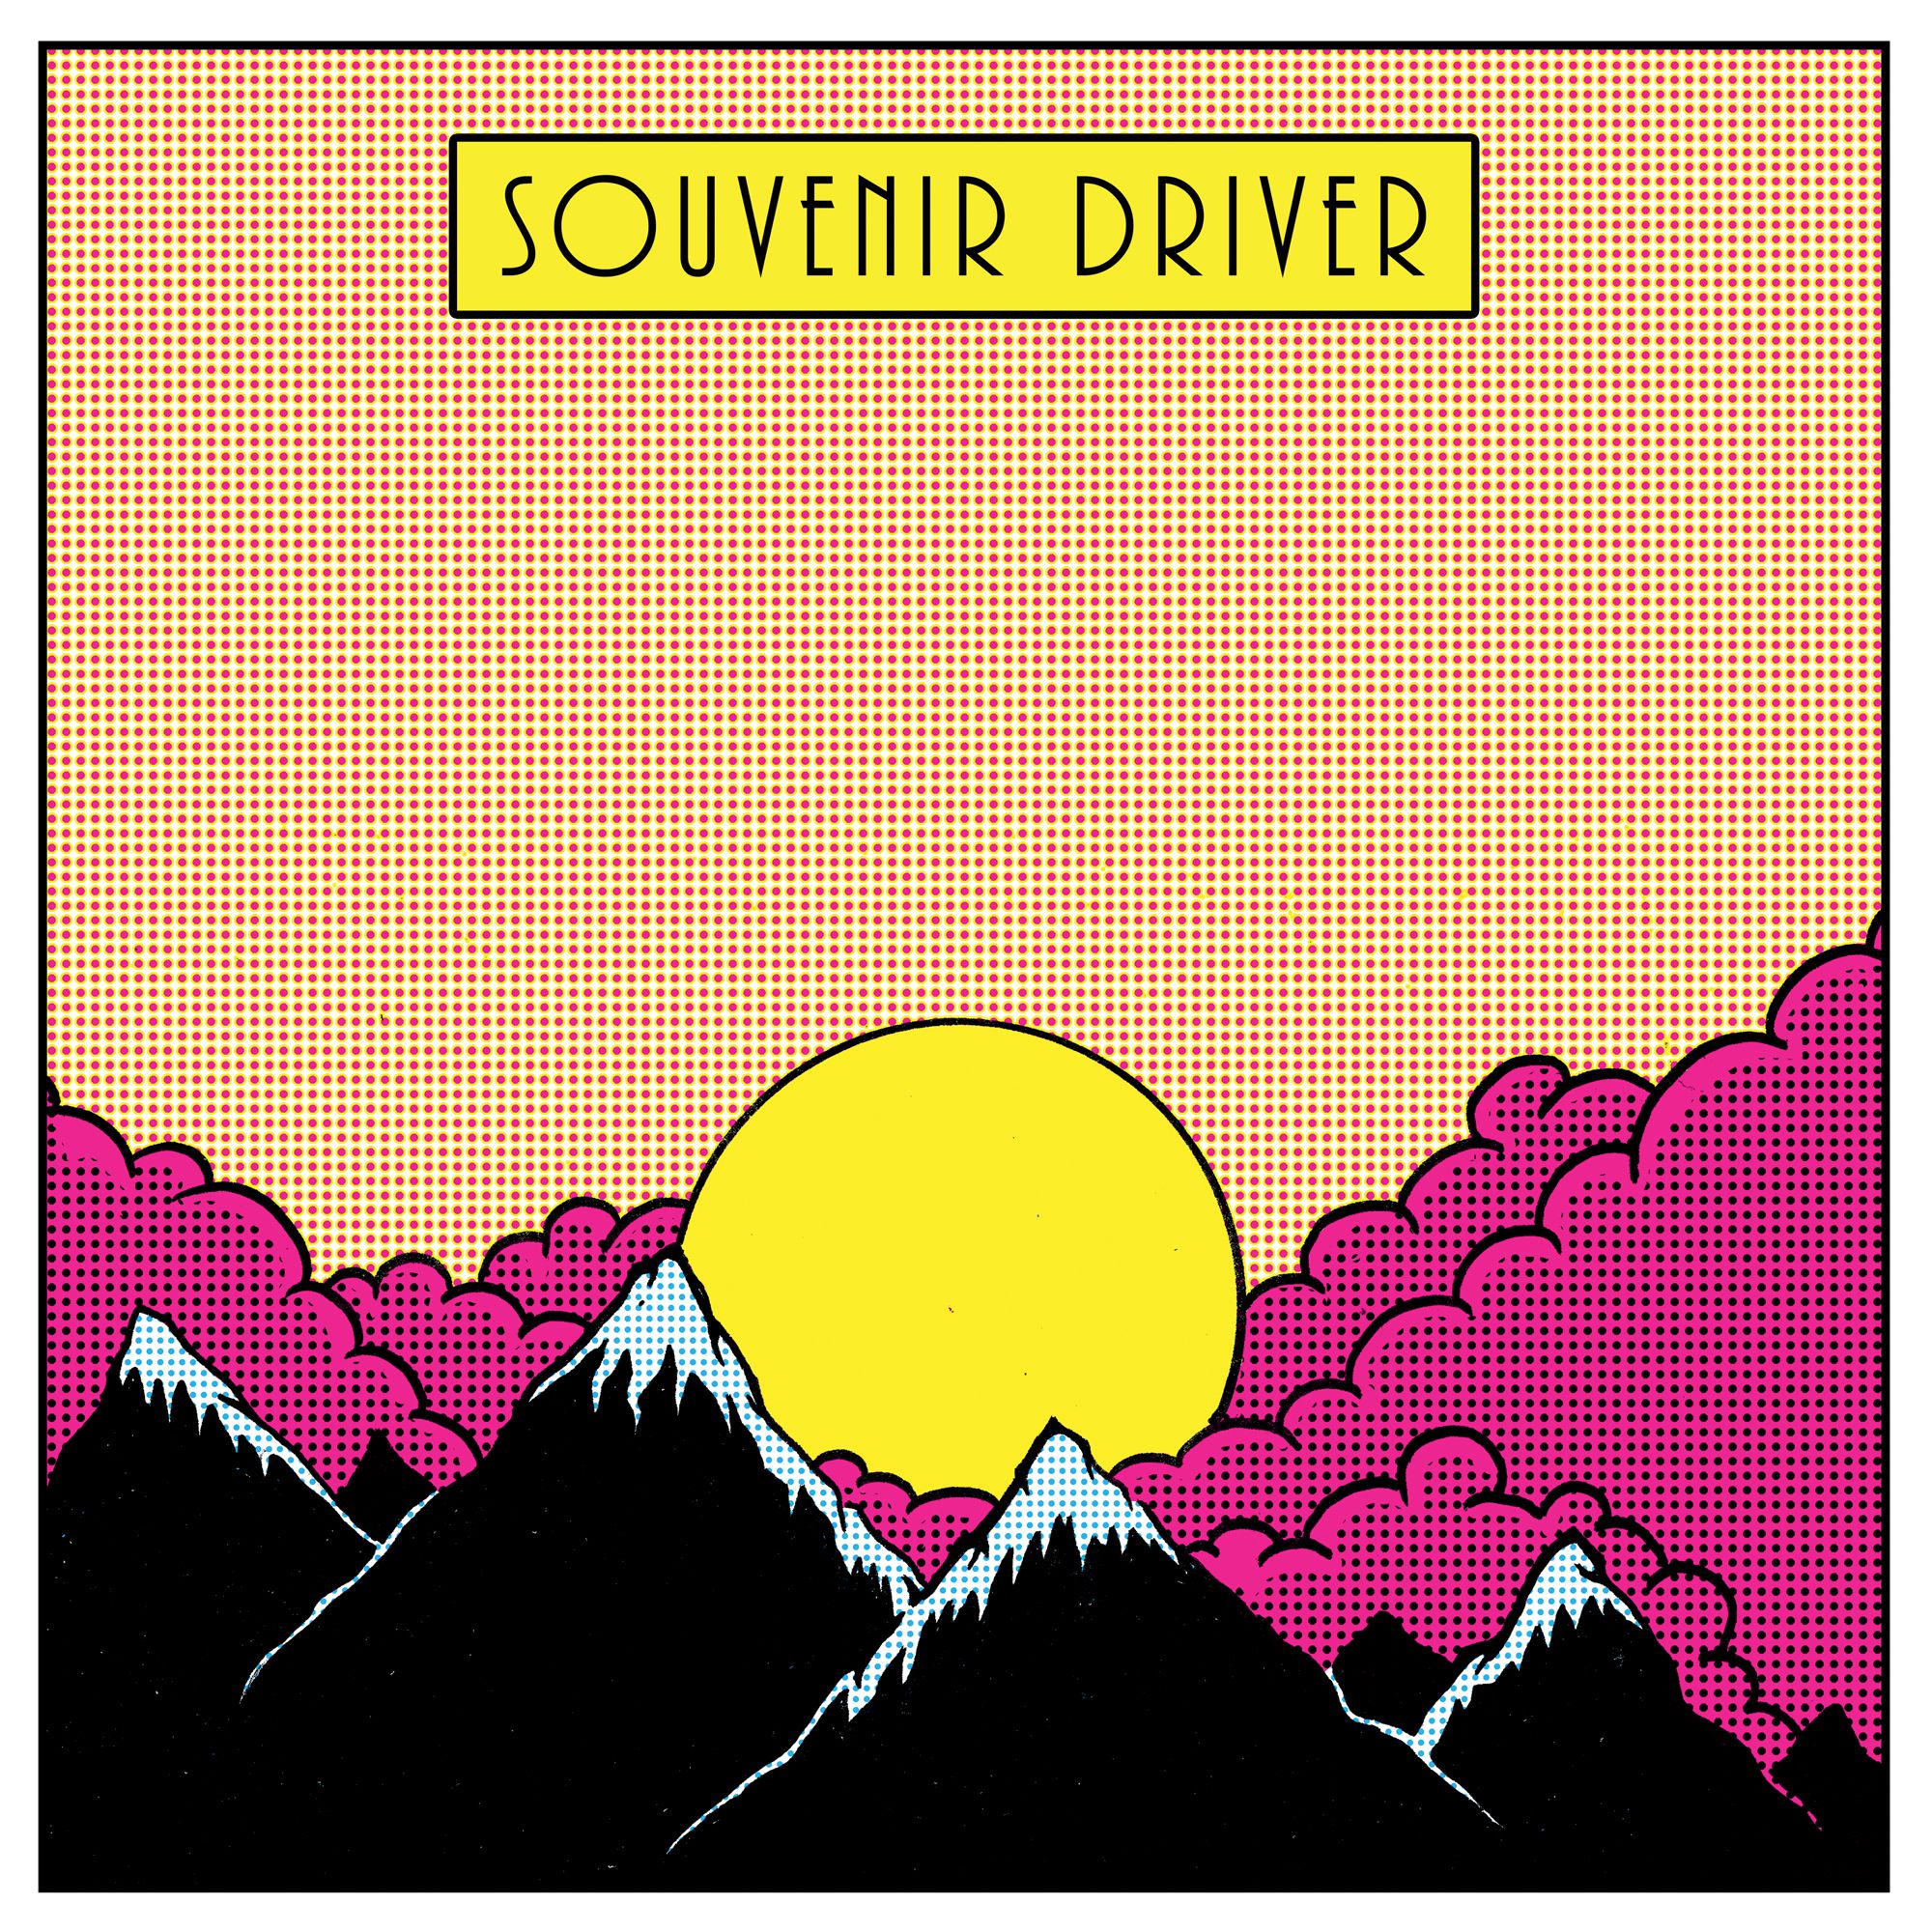 souvenir driver lpcover Portlands Souvenir Driver share their new self titled album: Stream